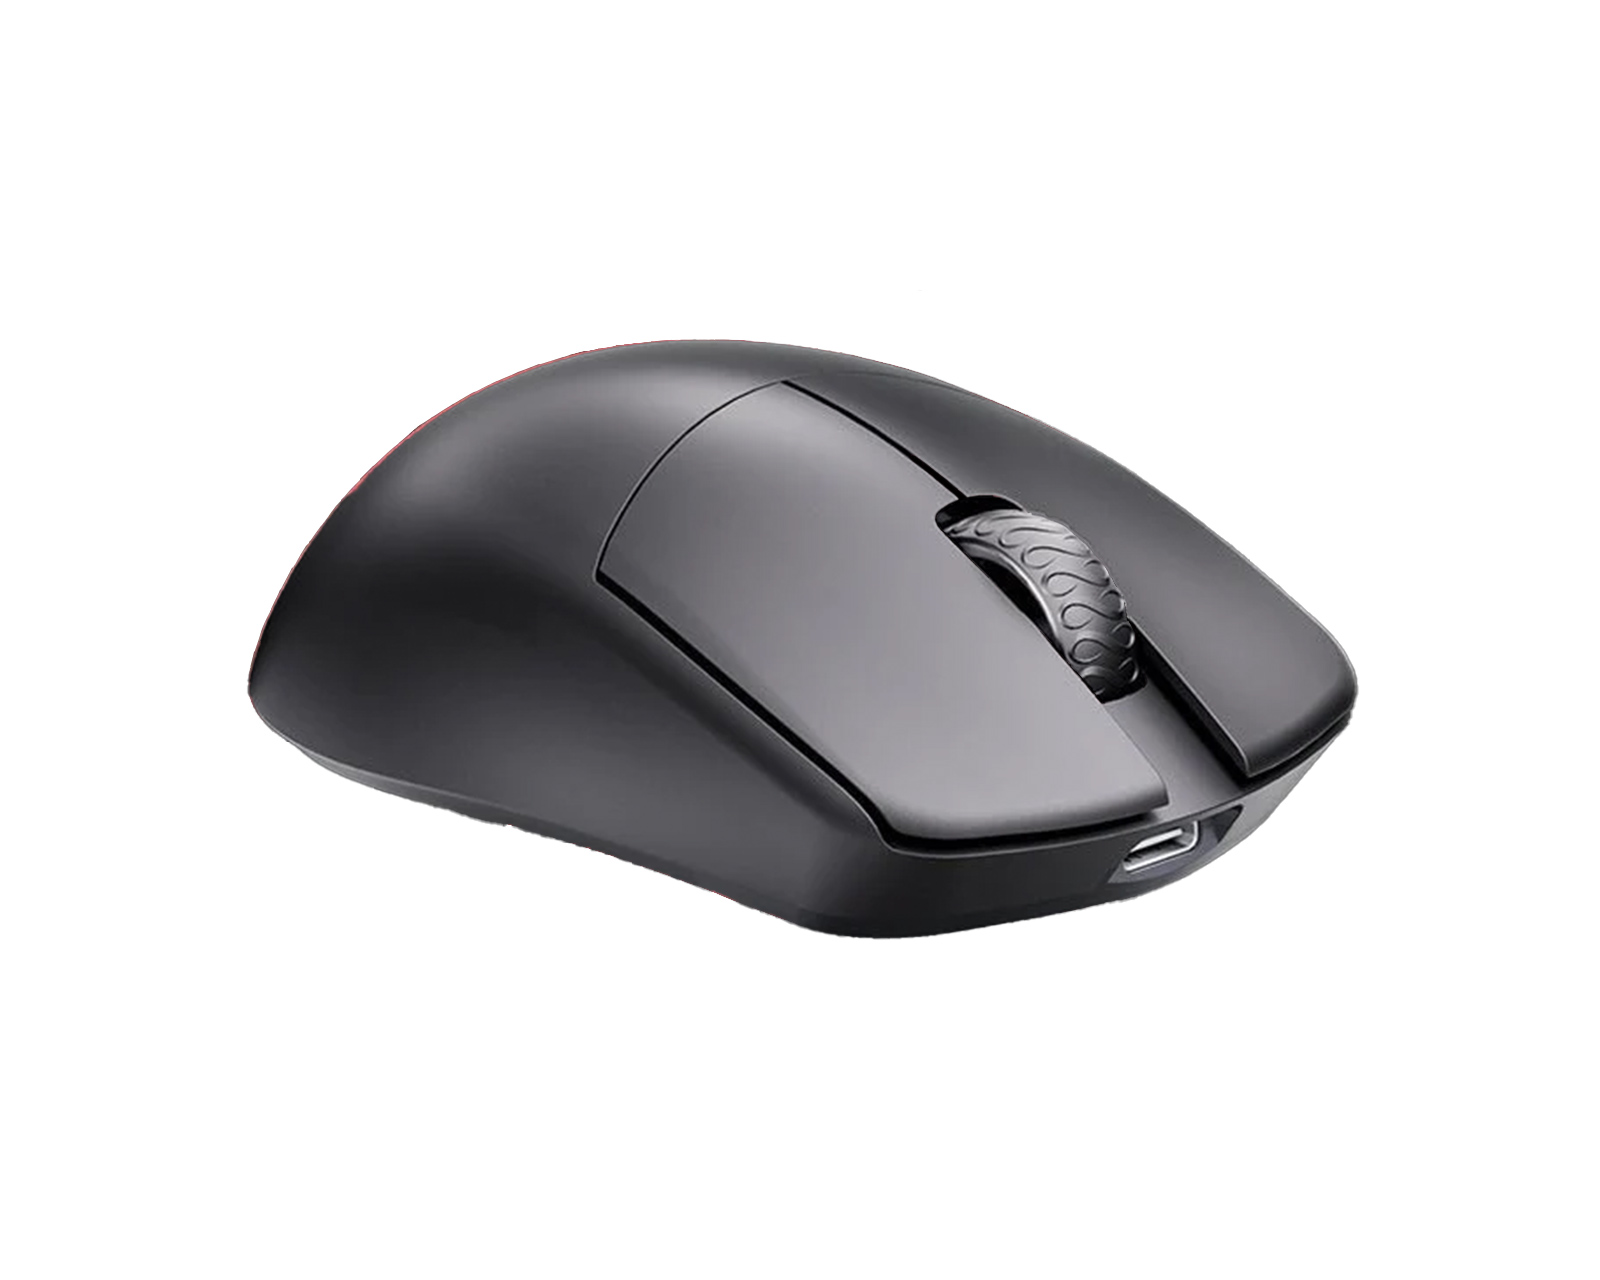 Lamzu MAYA 4K Wireless Superlight Gaming Mouse - Charcoal Black